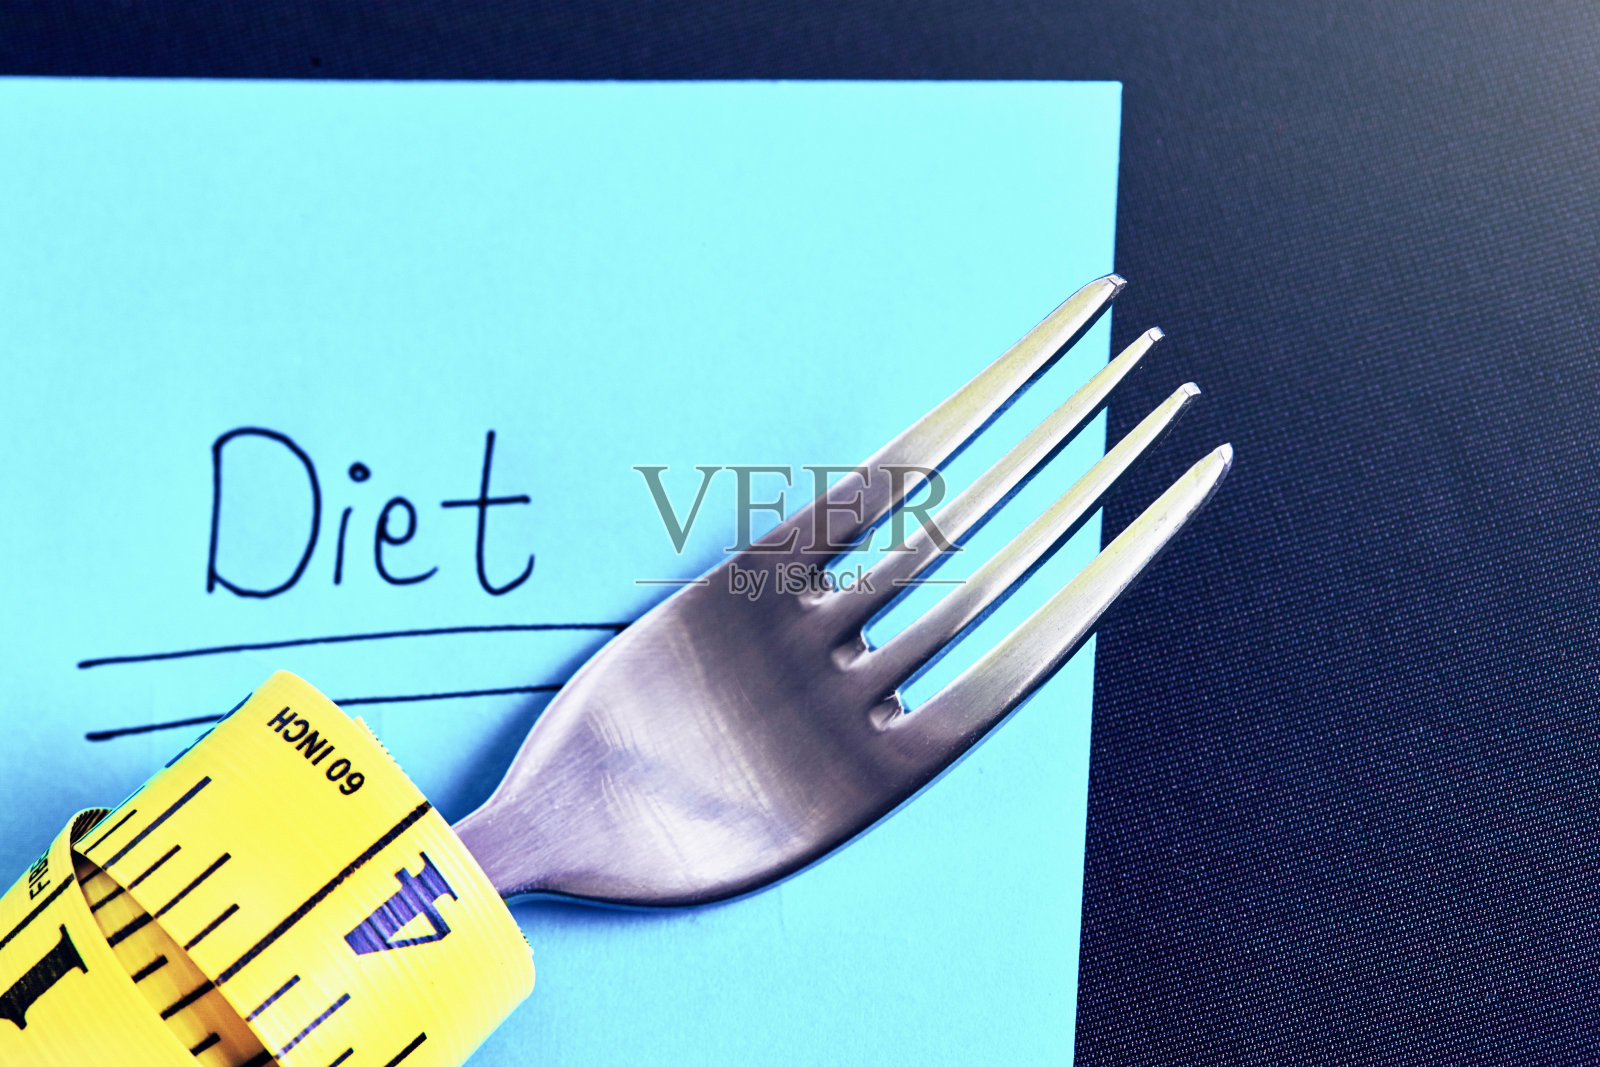 叉子下面用卷尺包着的便利贴上写着“节食”这个词照片摄影图片